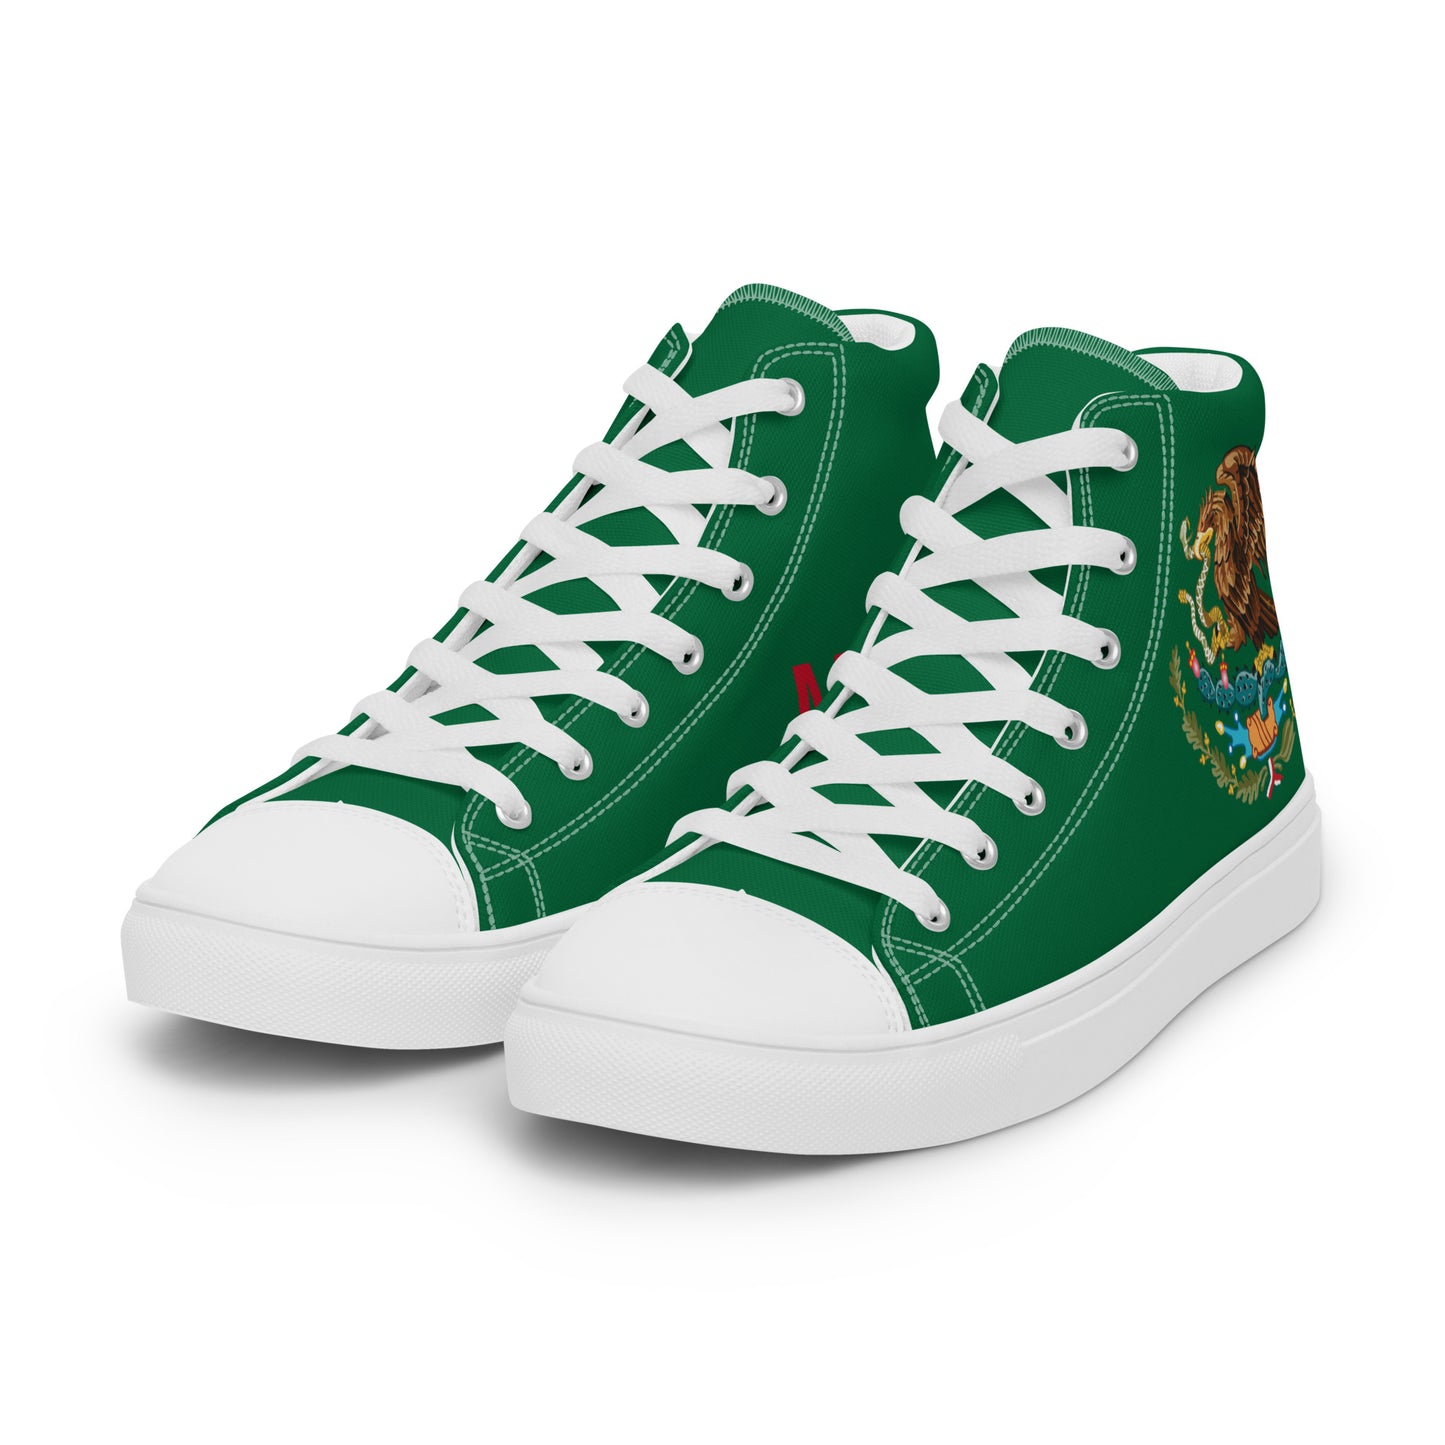 México - Men - Green - High top shoes